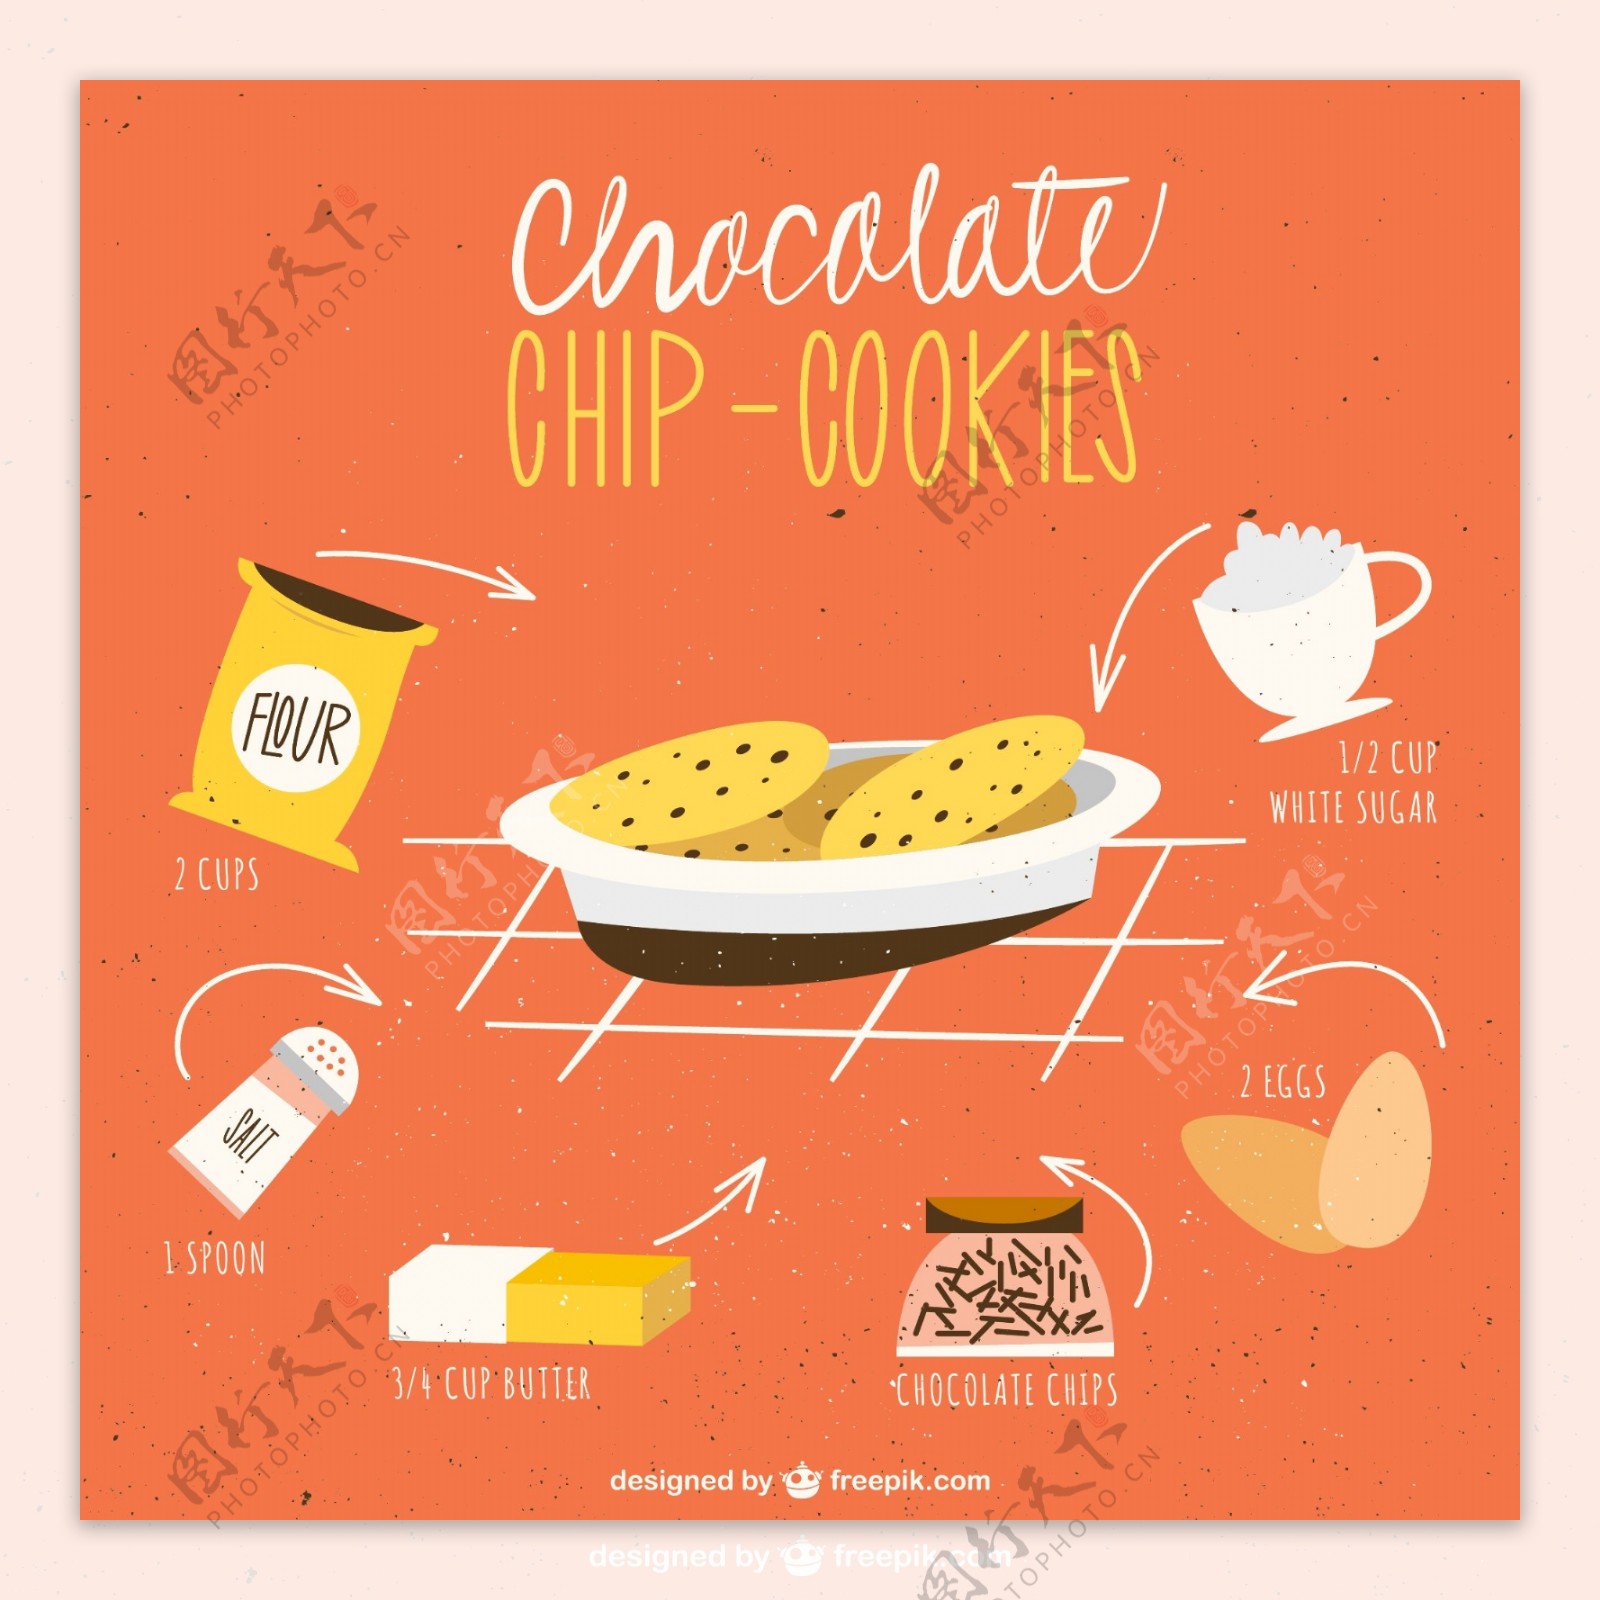 彩绘巧克力曲奇饼干食谱矢量图